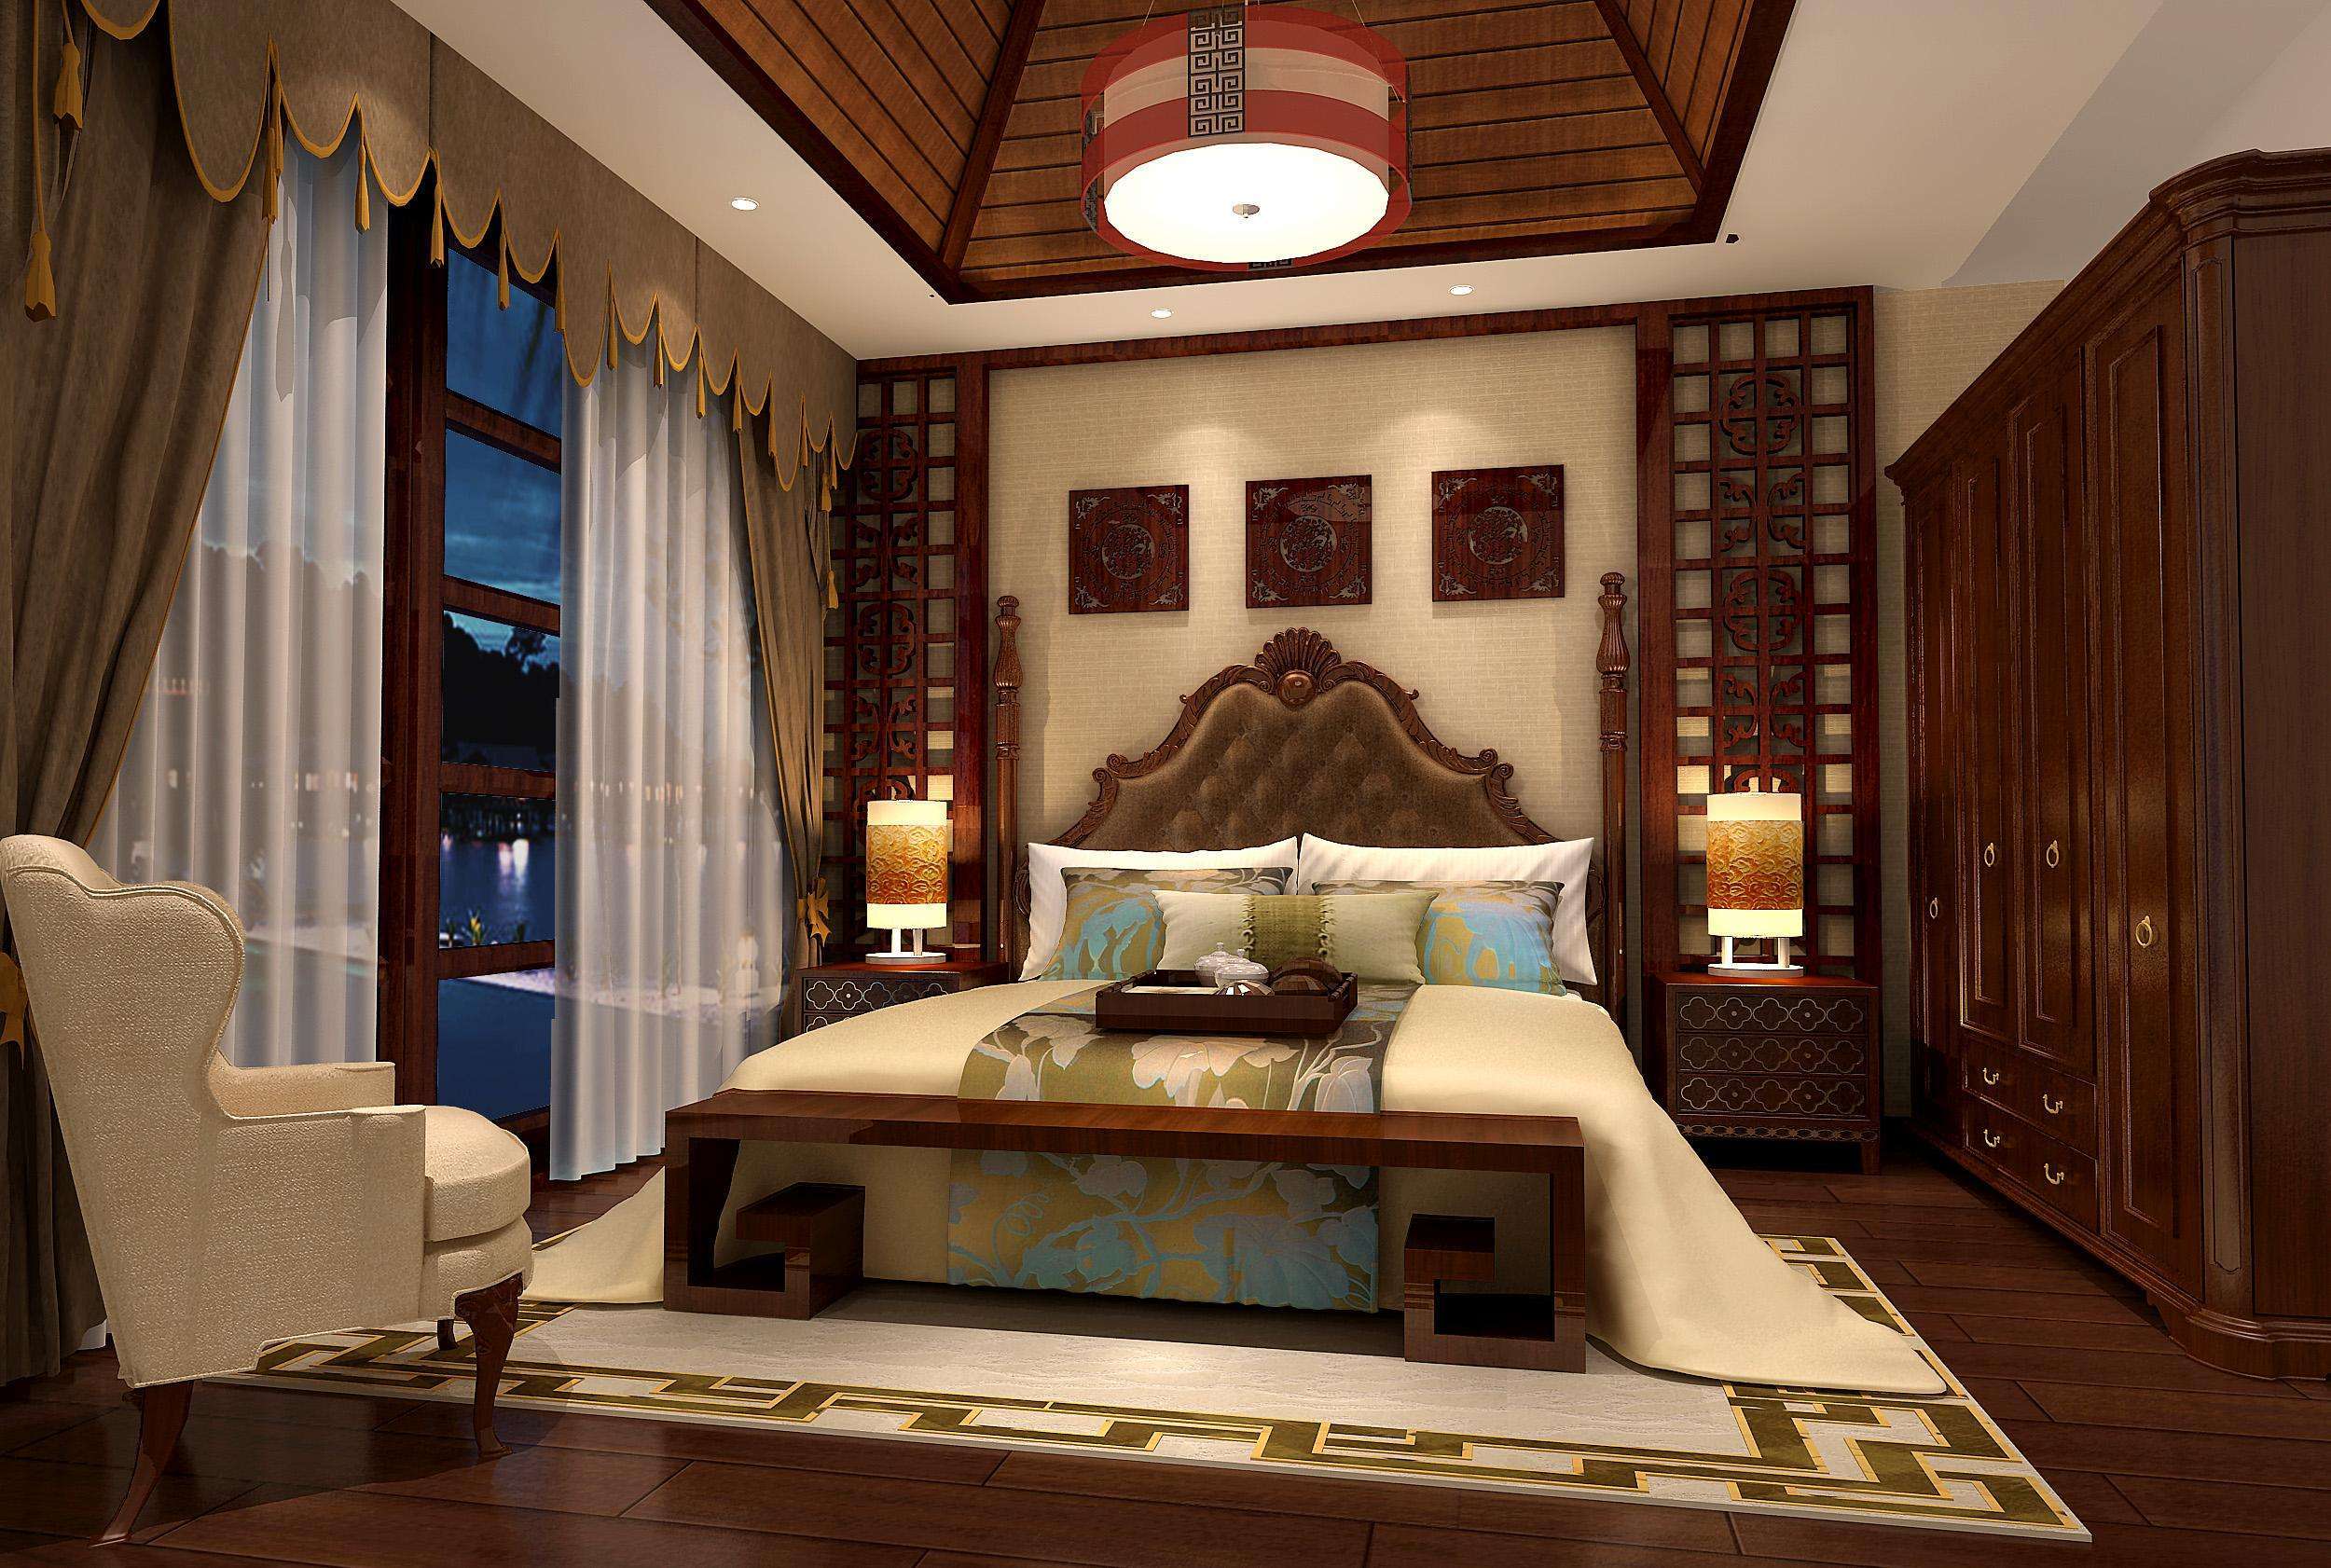 100平米小别墅客厅卧室中式古典风格装修效果图